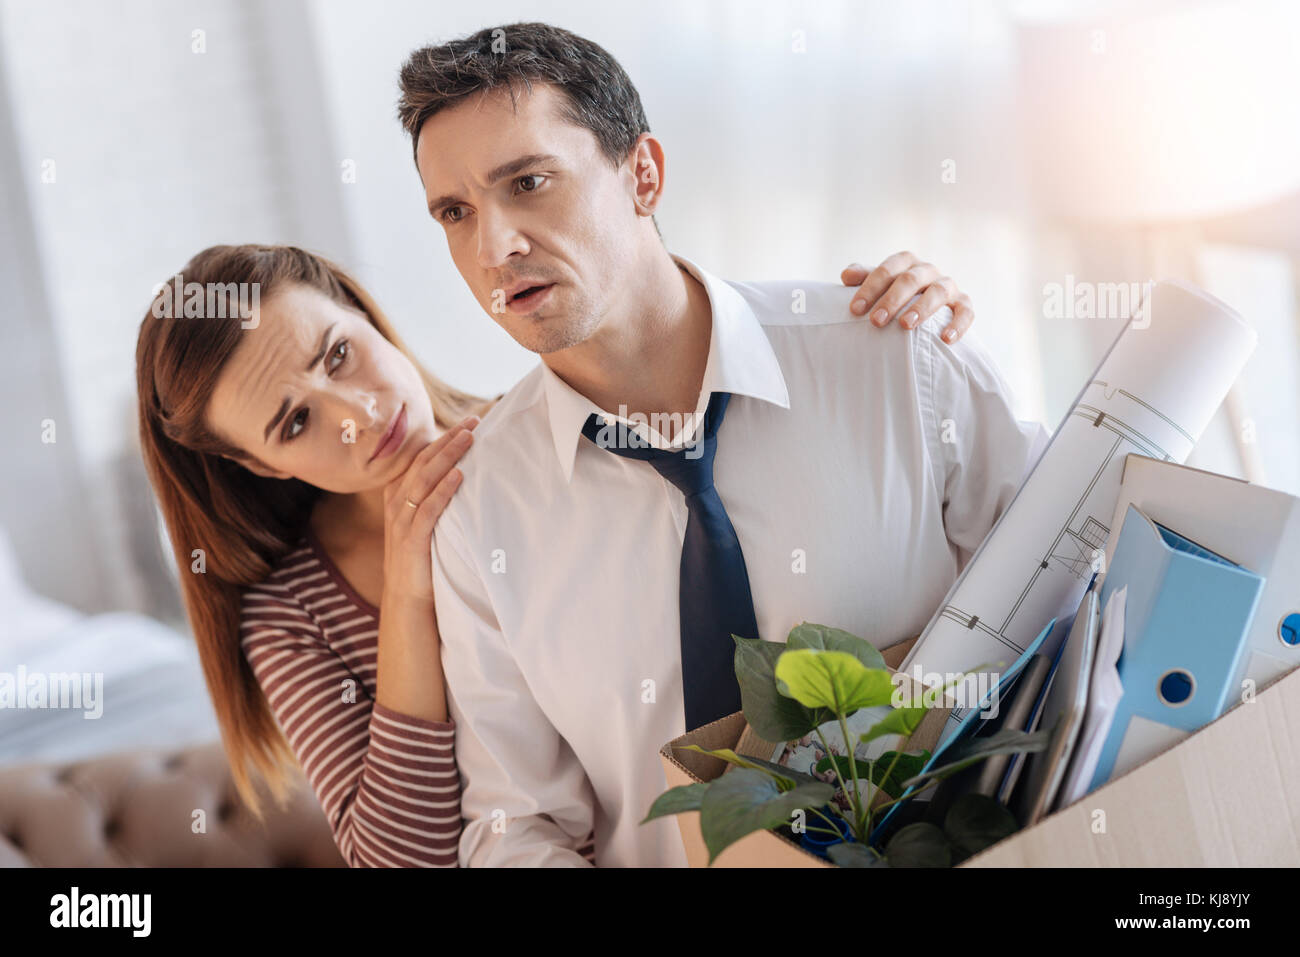 Amante esposa joven mirando su malestar desempleado marido Foto de stock